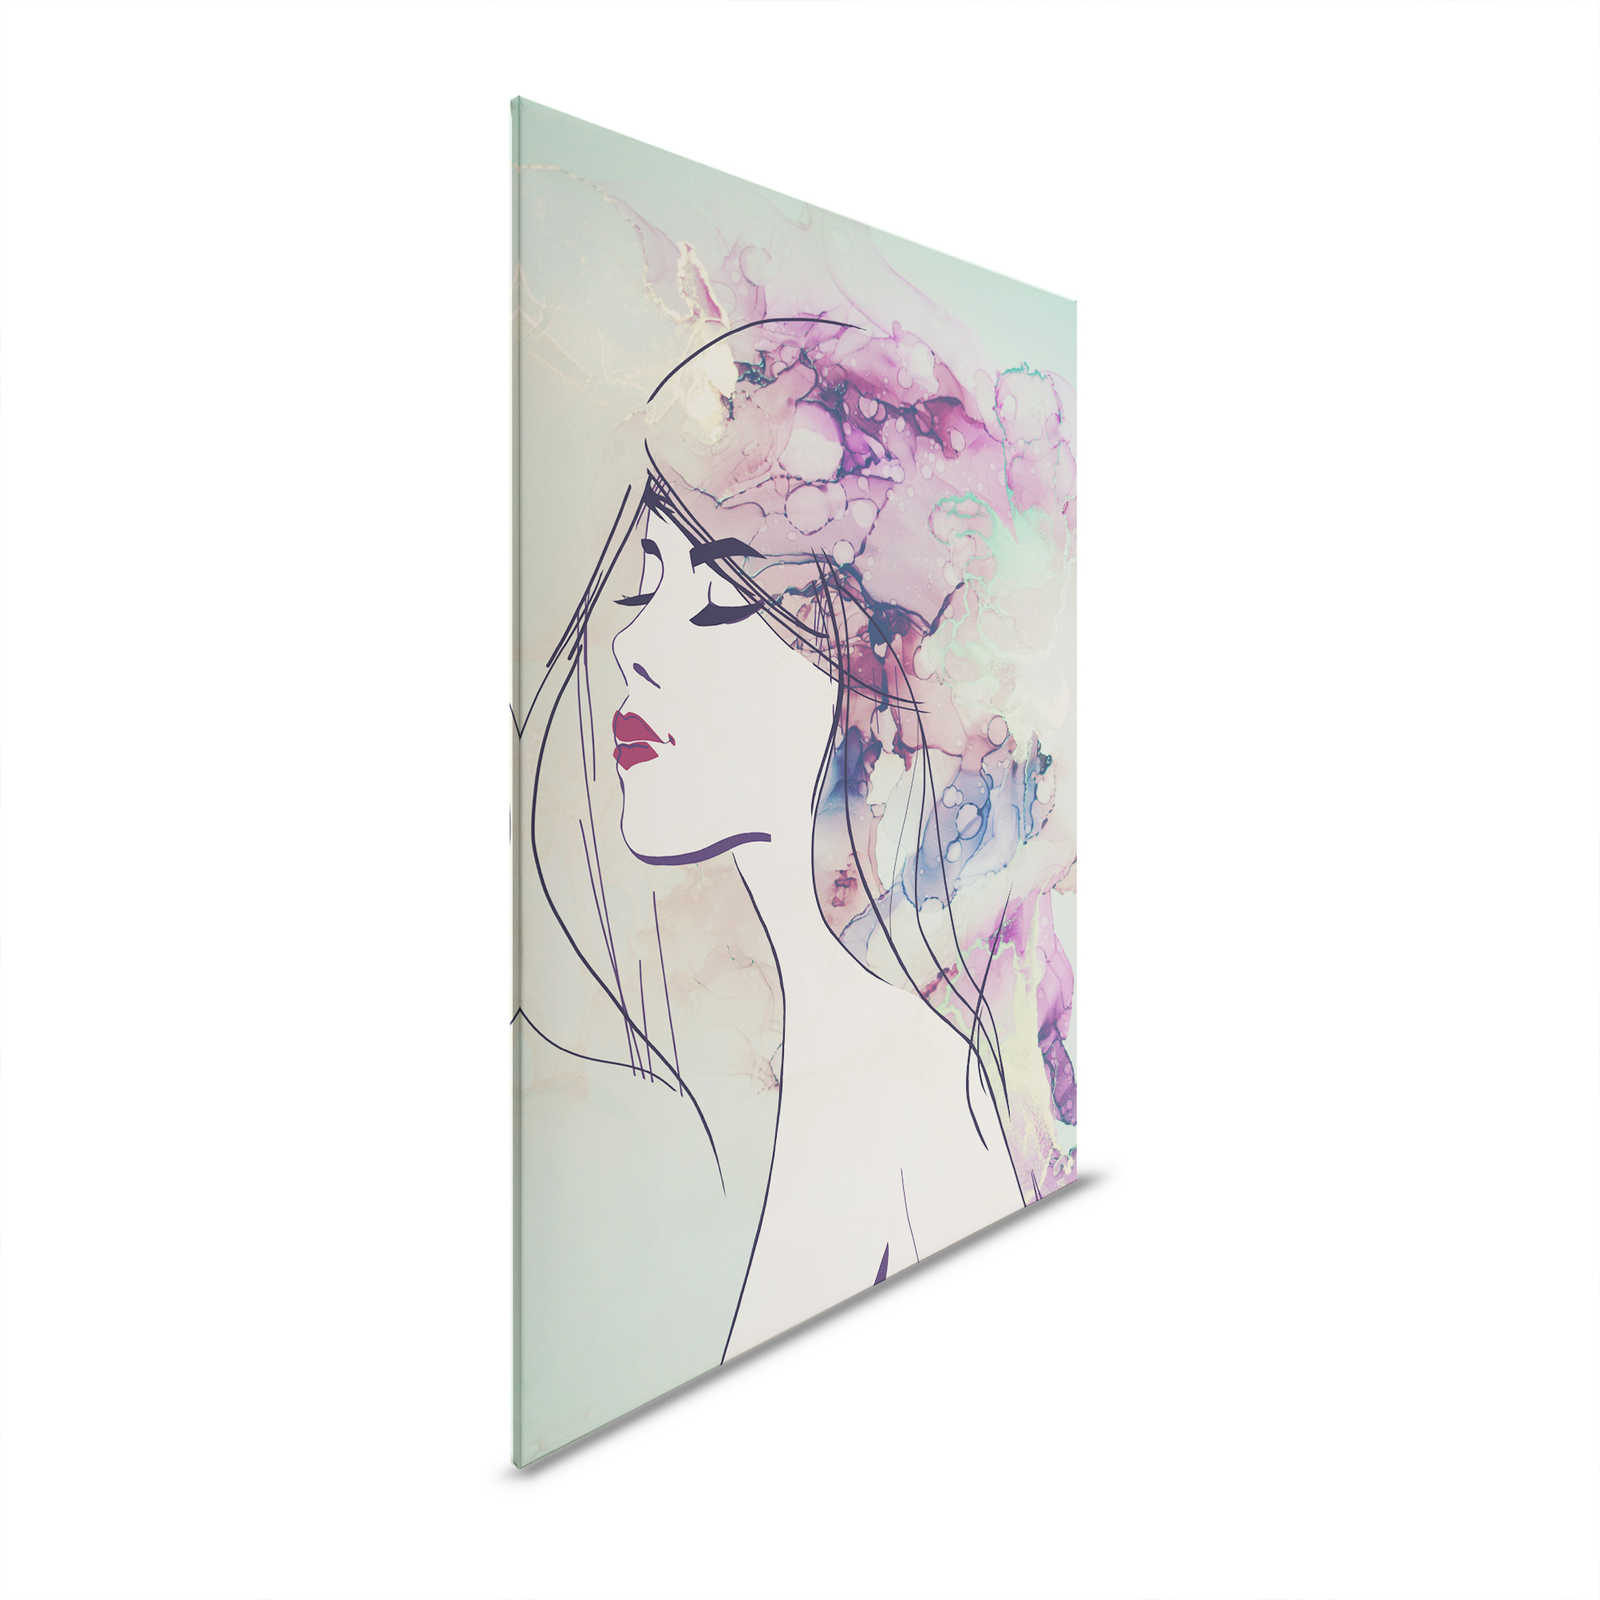 Quadro su tela con disegno acrilico: Volto di donna in turchese e viola - 1,20 m x 0,80 m
